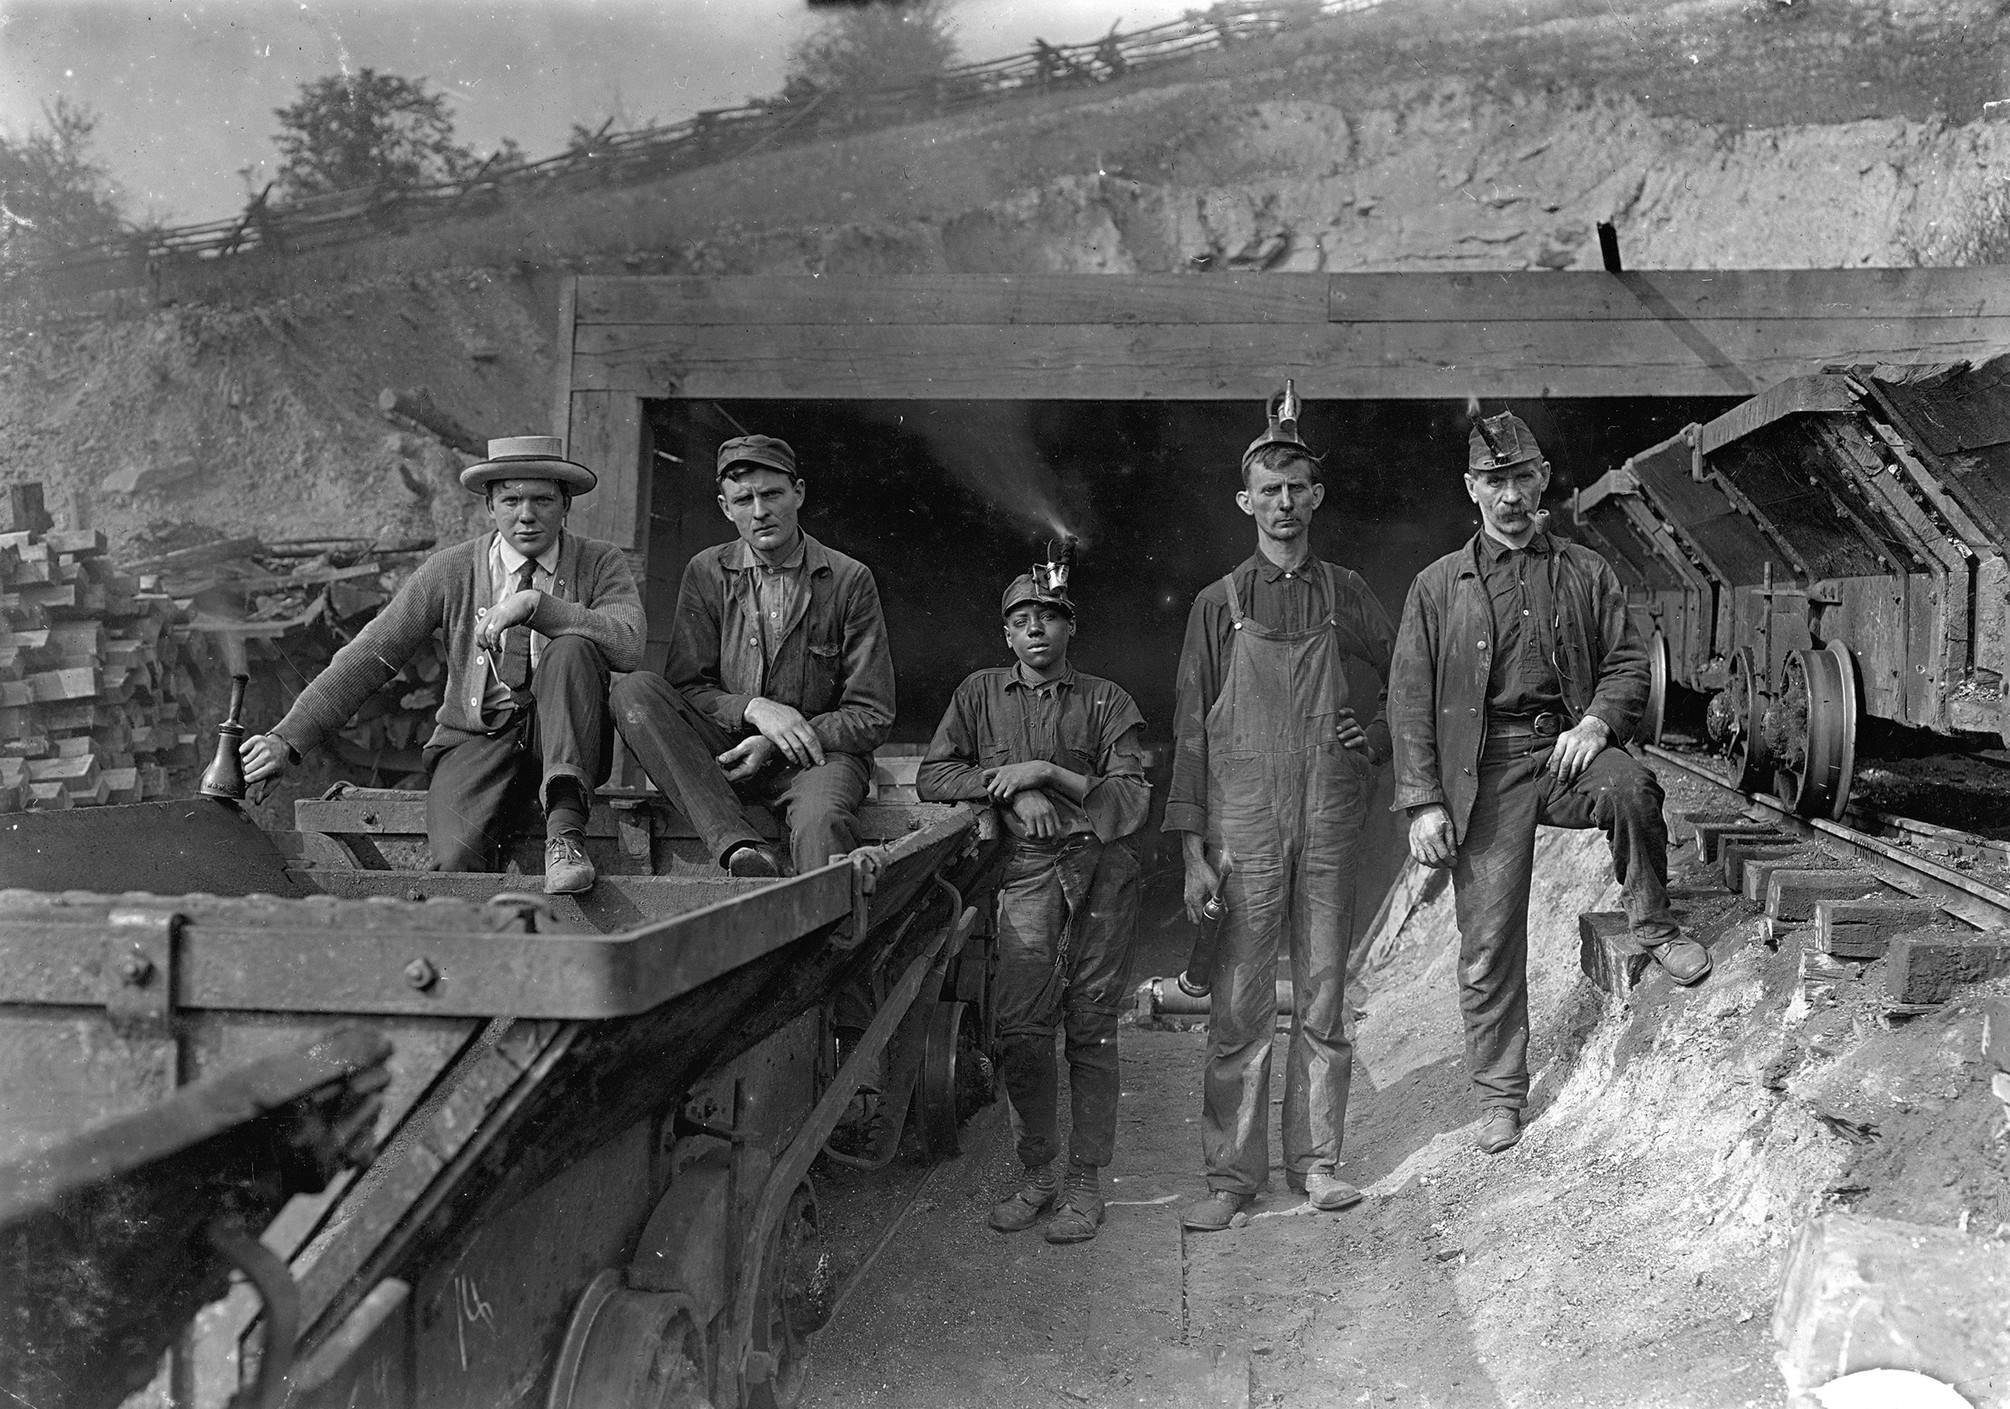 Coal miners in denim